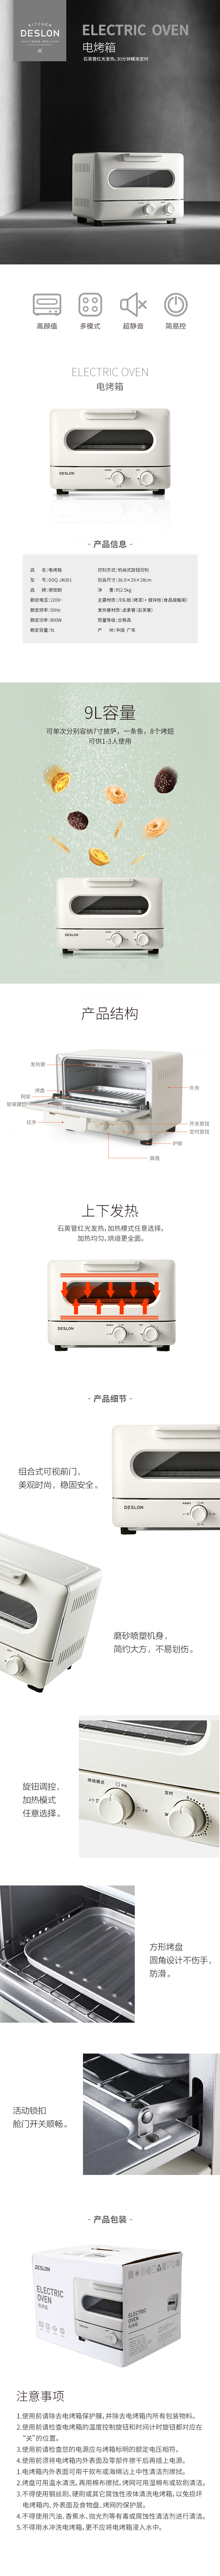 烤箱-750px.jpg